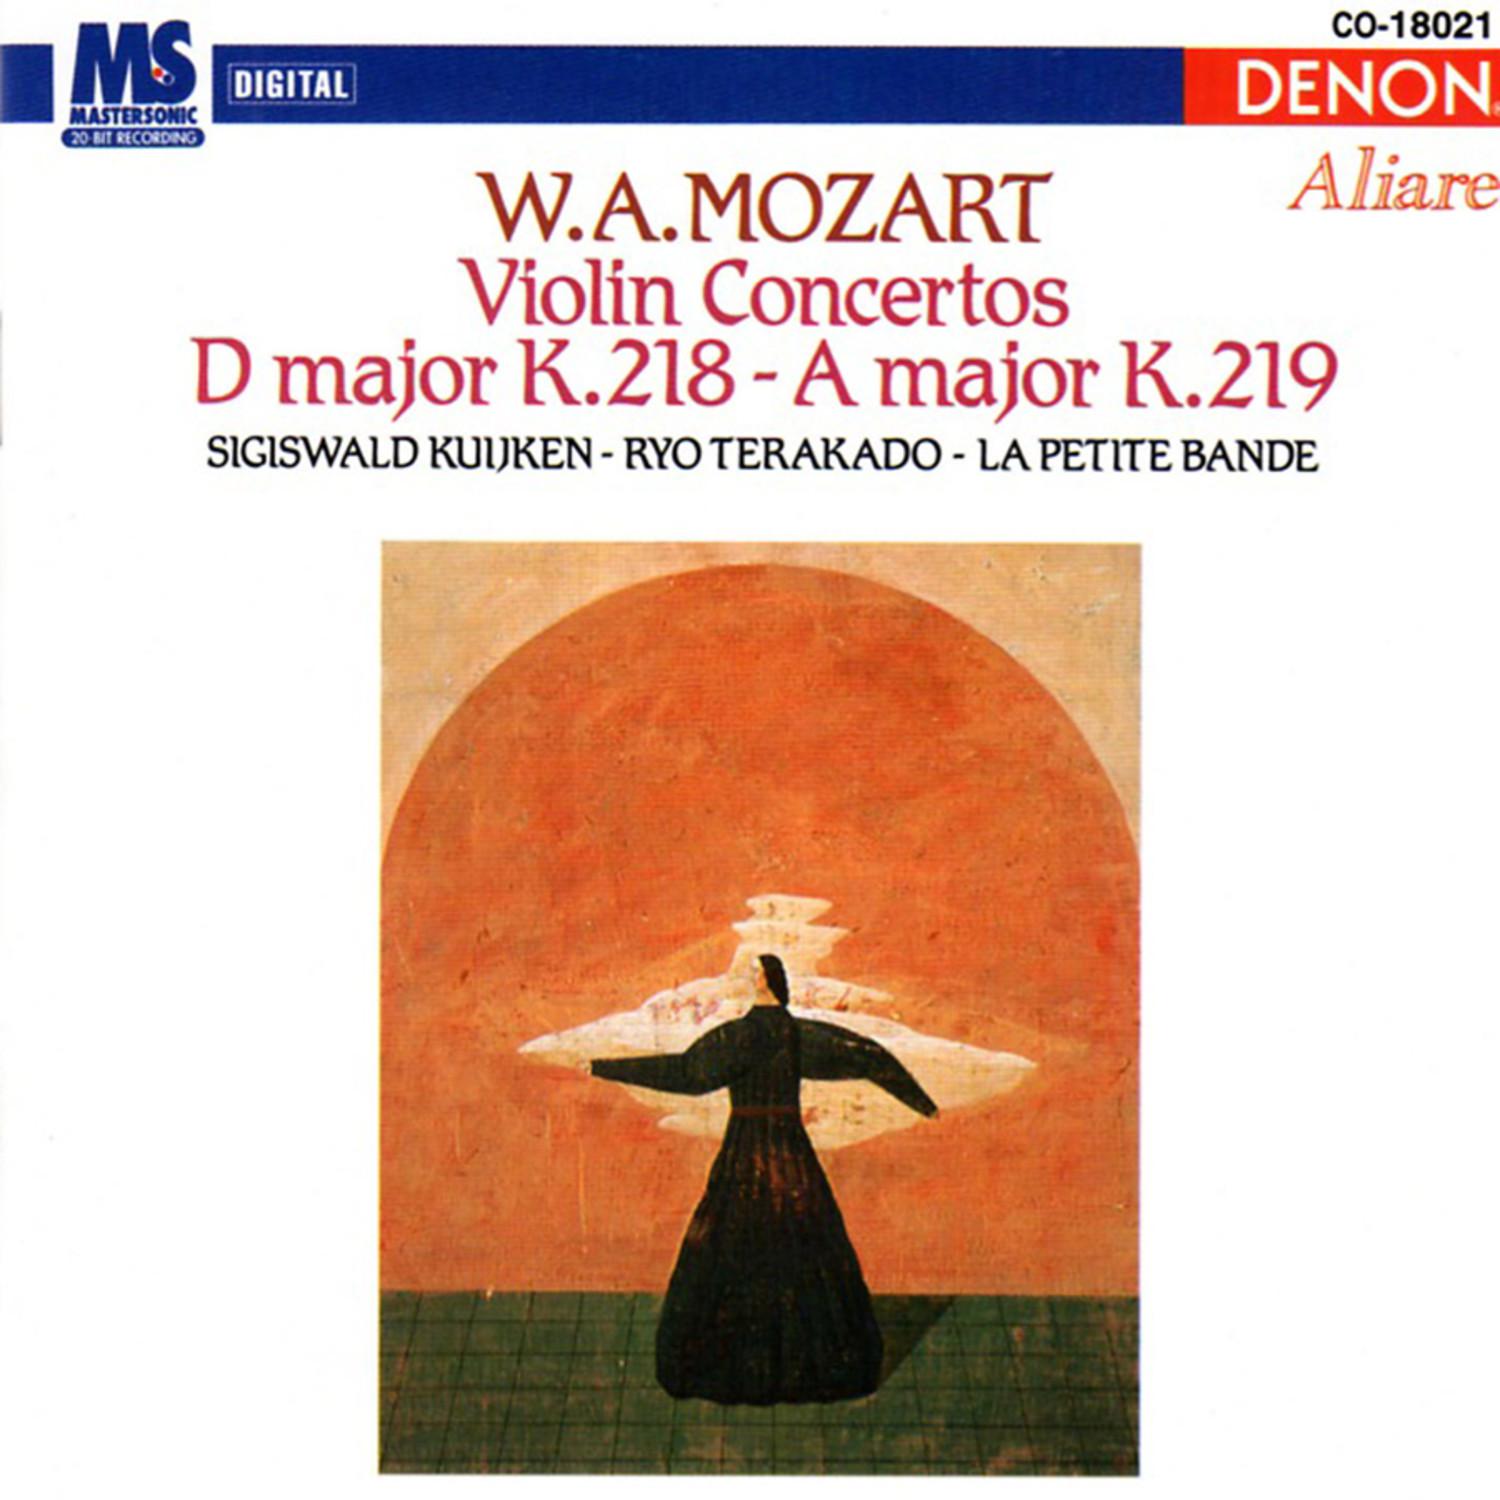 Concerto for Violin & Orchestra in A Major, K.219: II. Adagio